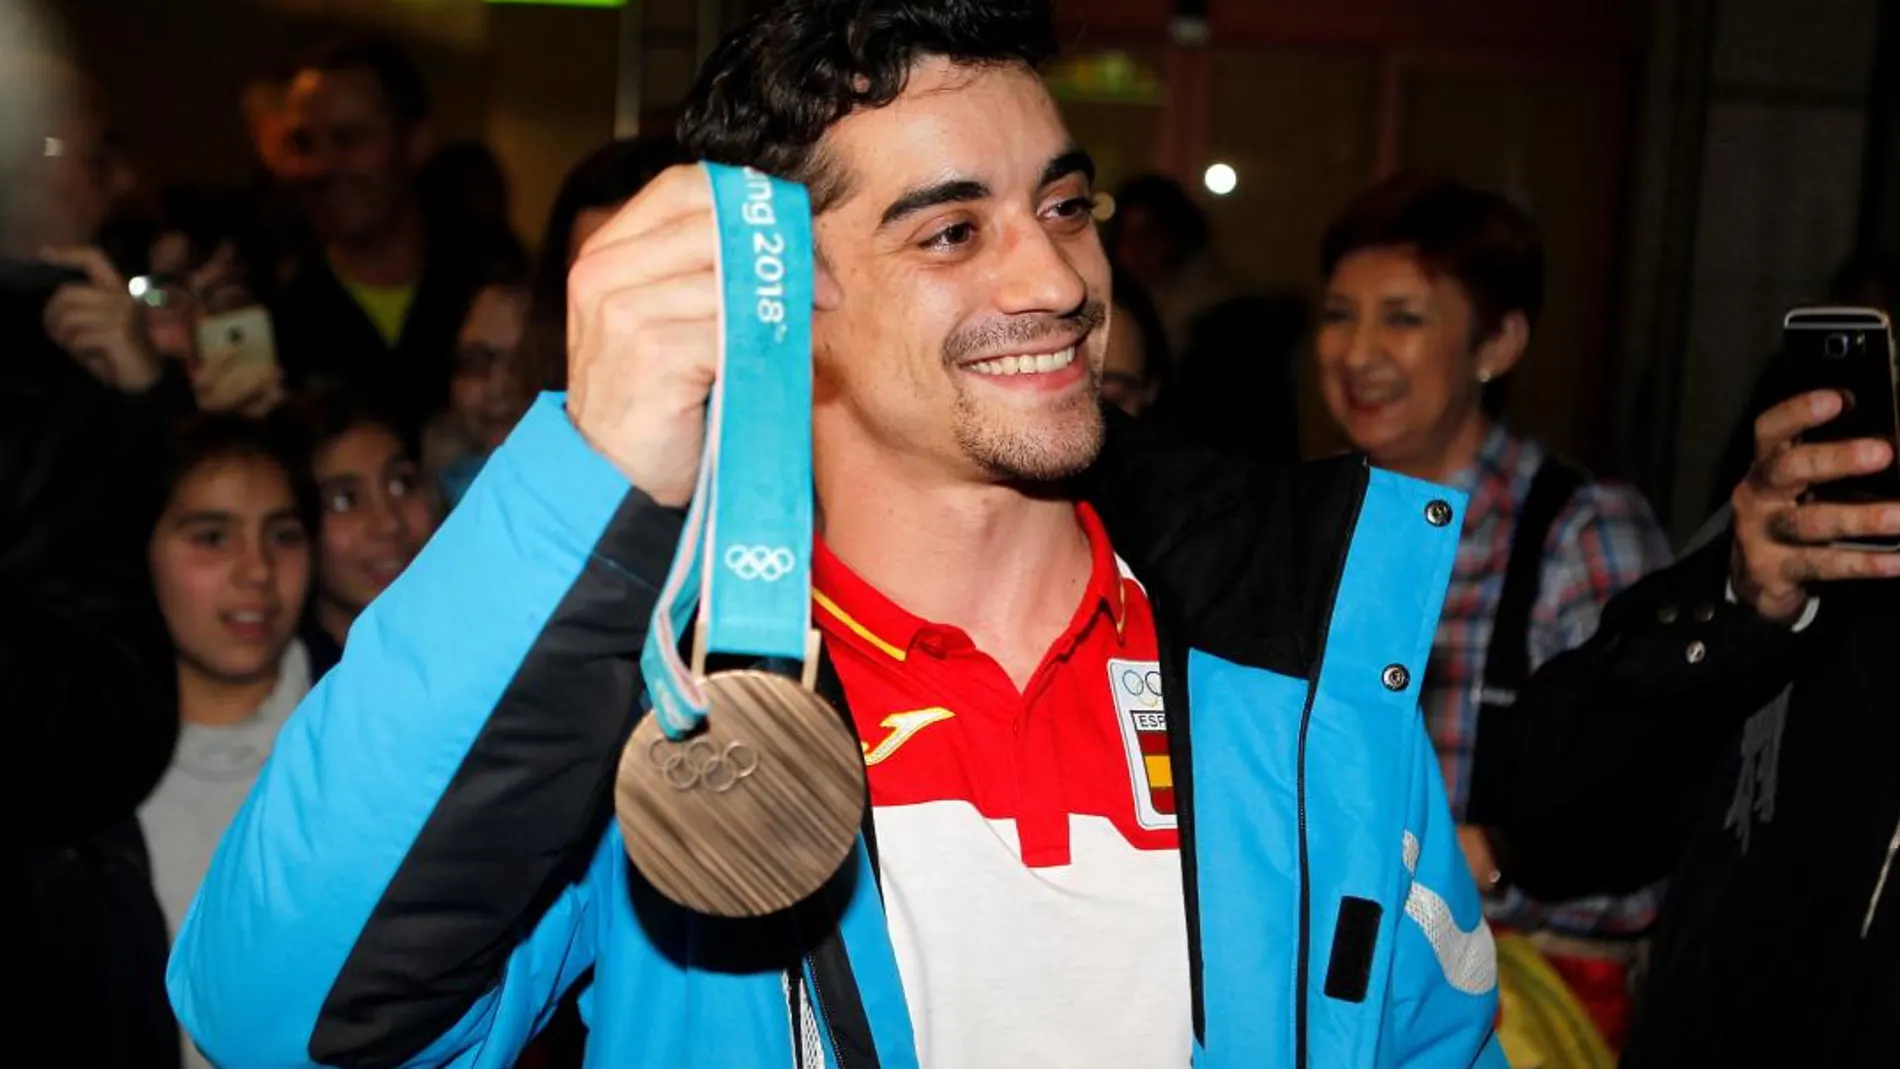 El patinador madrileño Javier Fernández muestra su medalla de bronce.